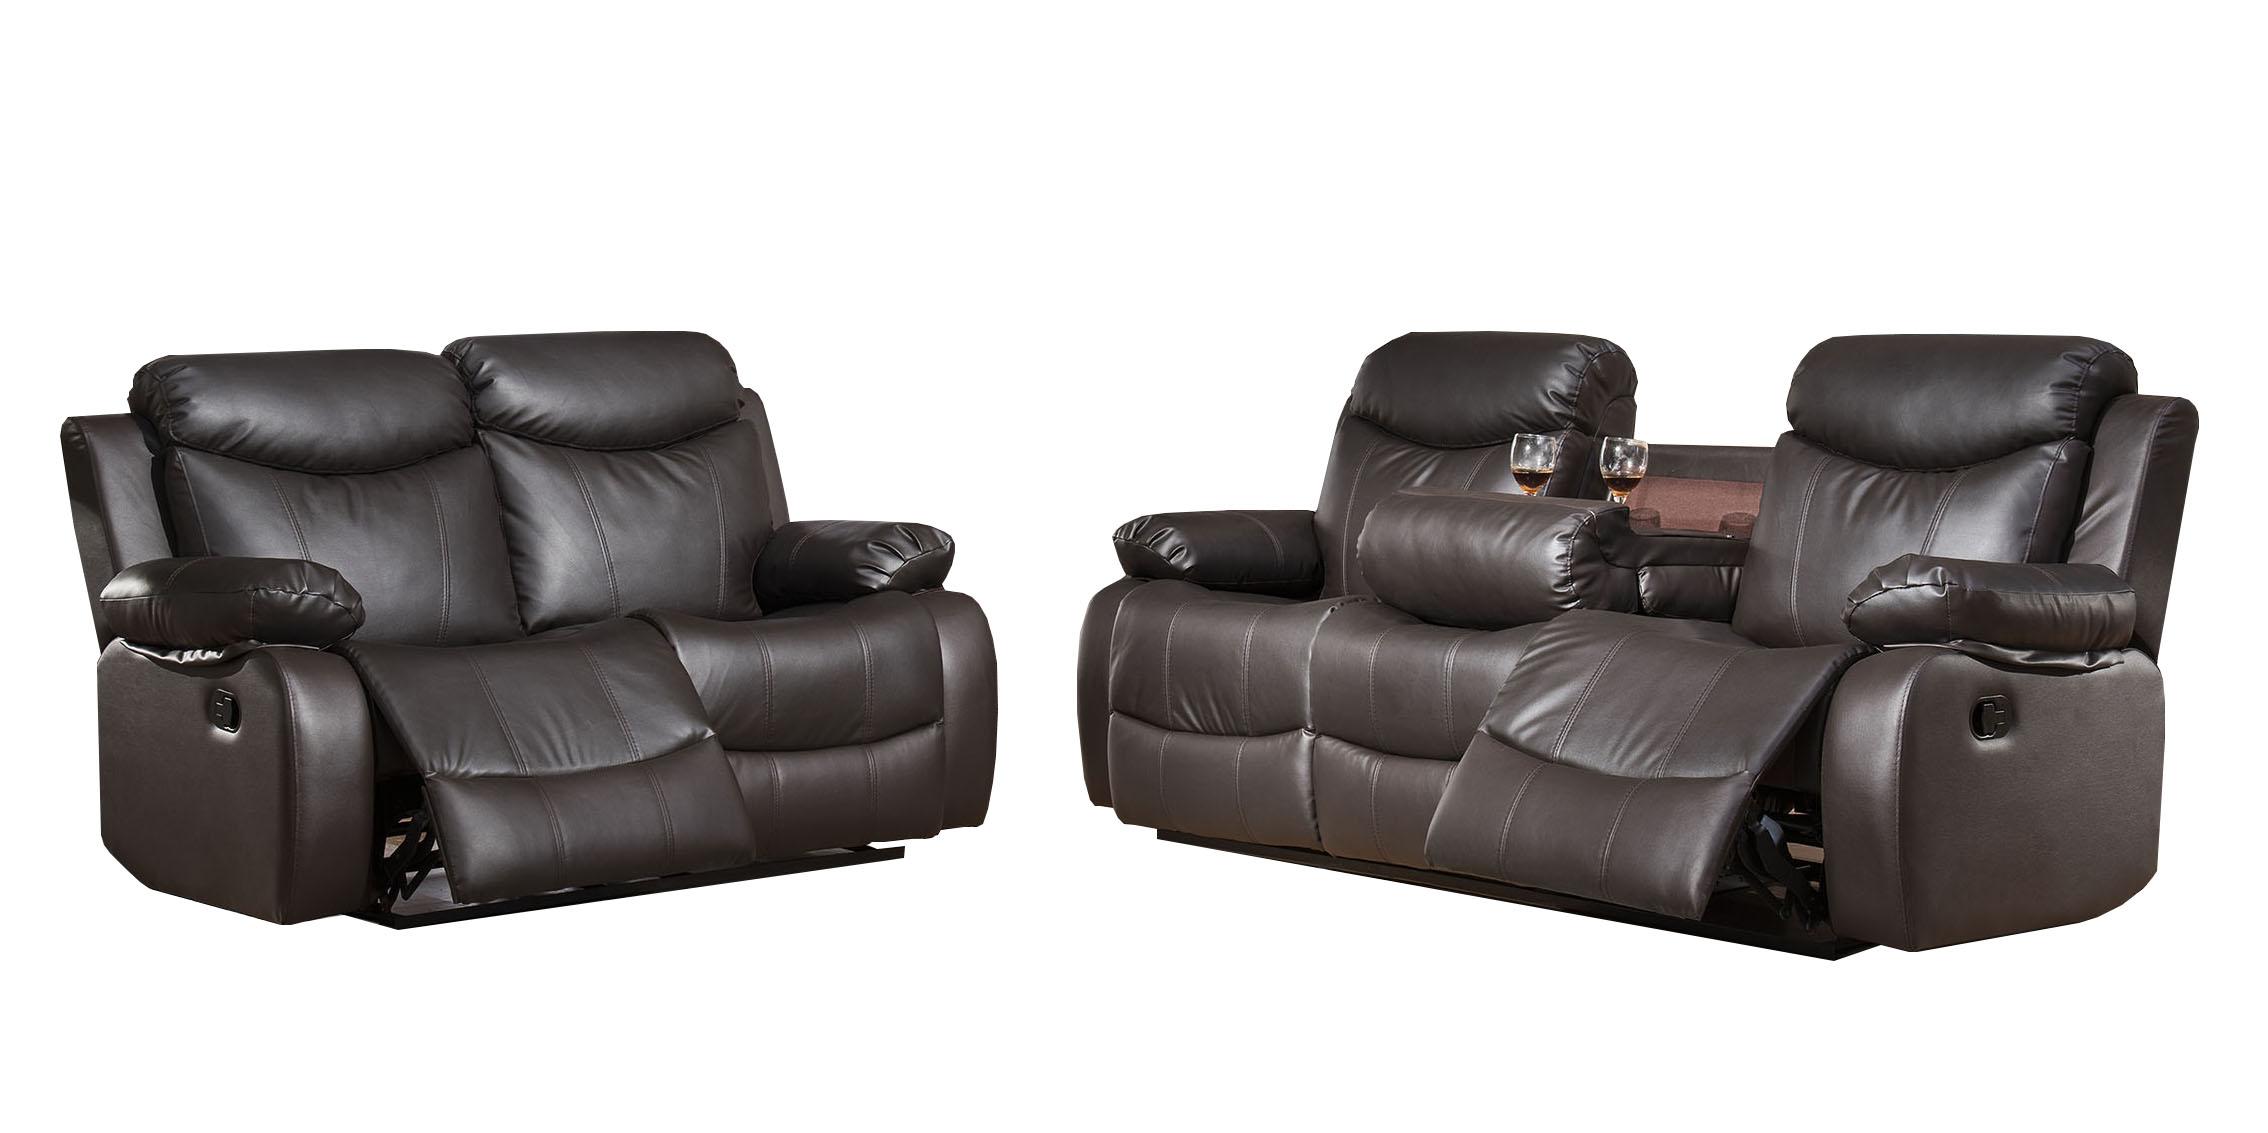 McFerran Furniture SF3558 Recliner Sofa Set